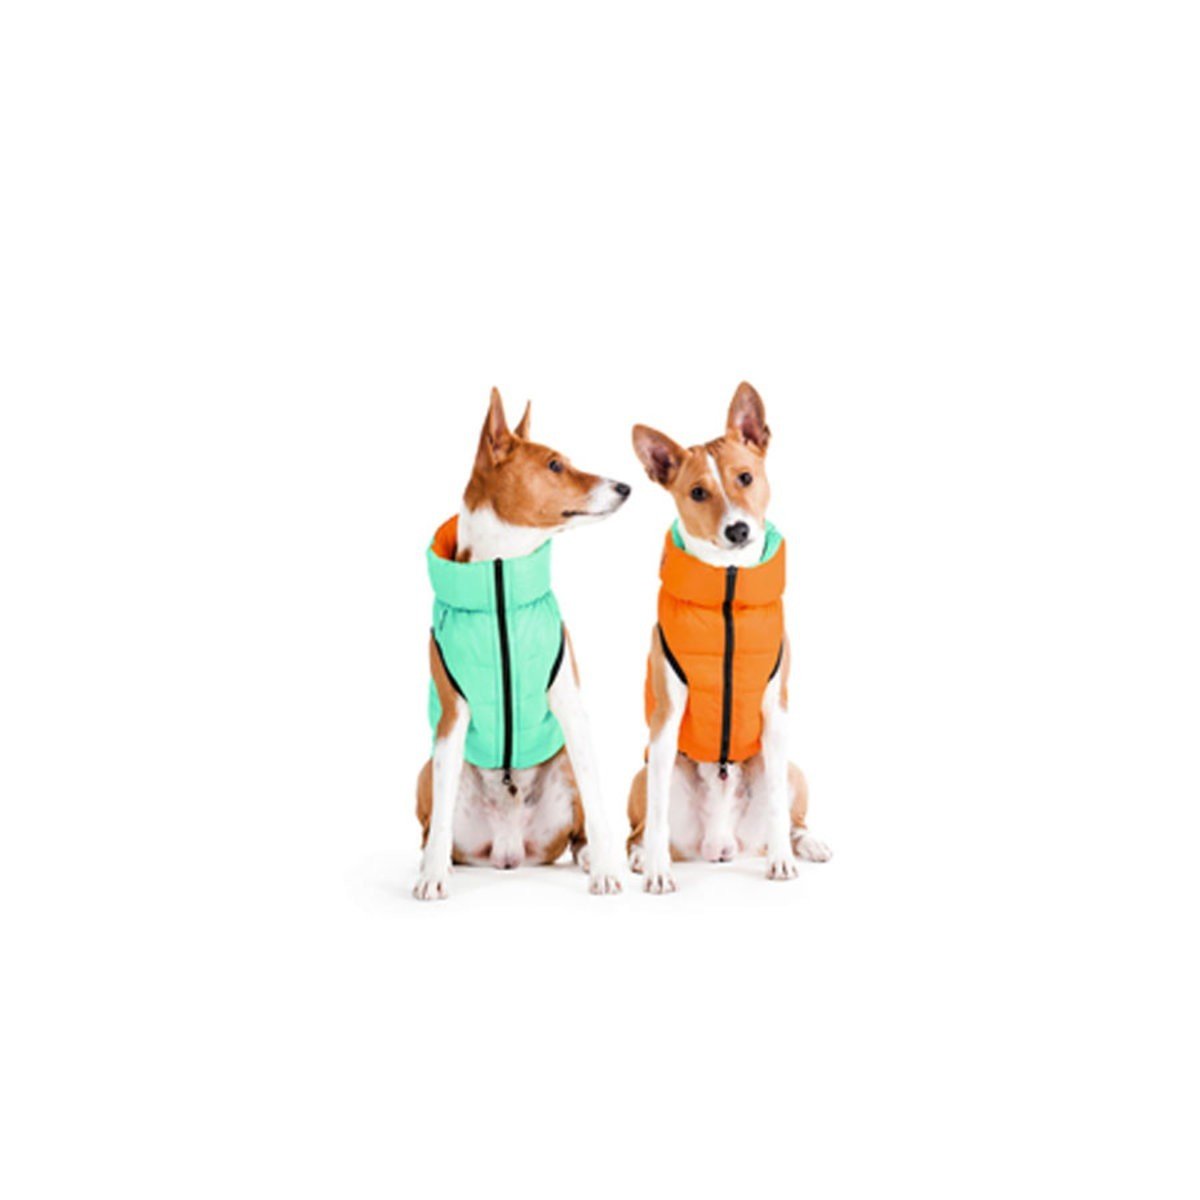 Курточка для собак AiryVest Lumi двухсторонняя, светящаяся в темноте, XS22, салатово-оранжевая - фото 2